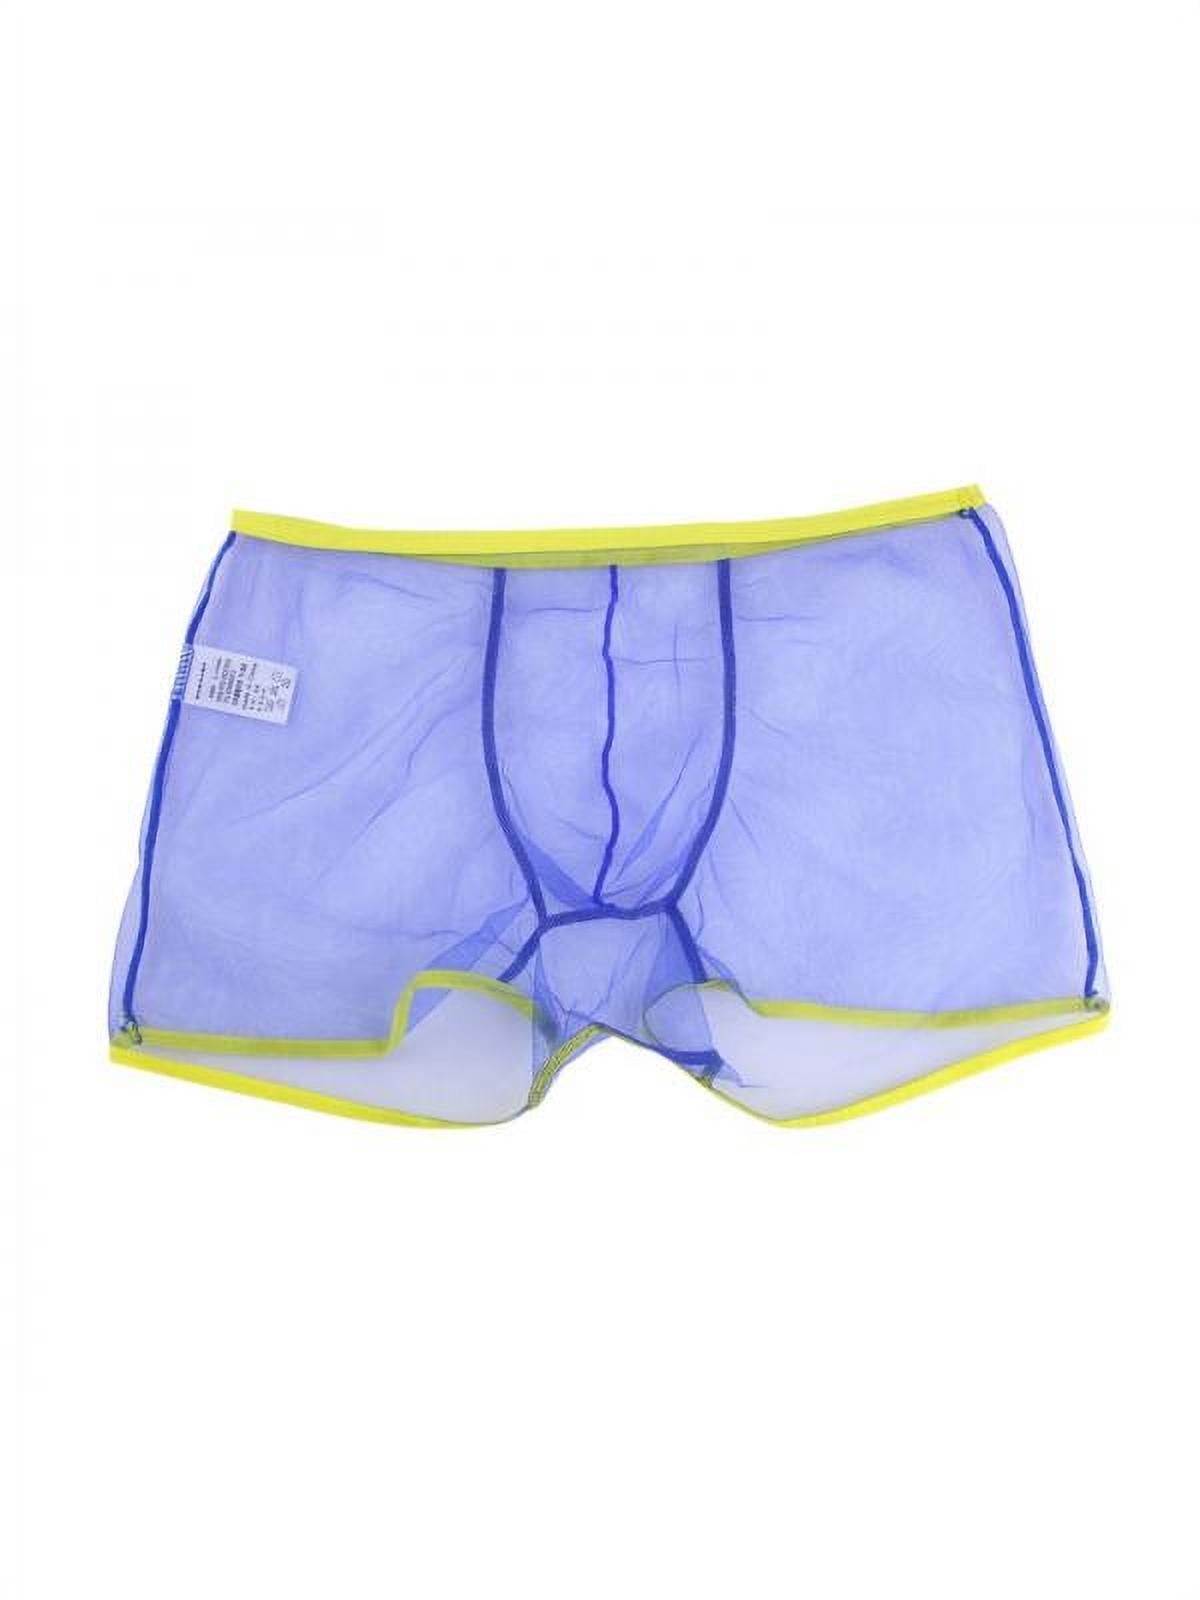 Men's Sexy Sheer Mesh Boxer Briefs Transparent Underwear Shorts ...